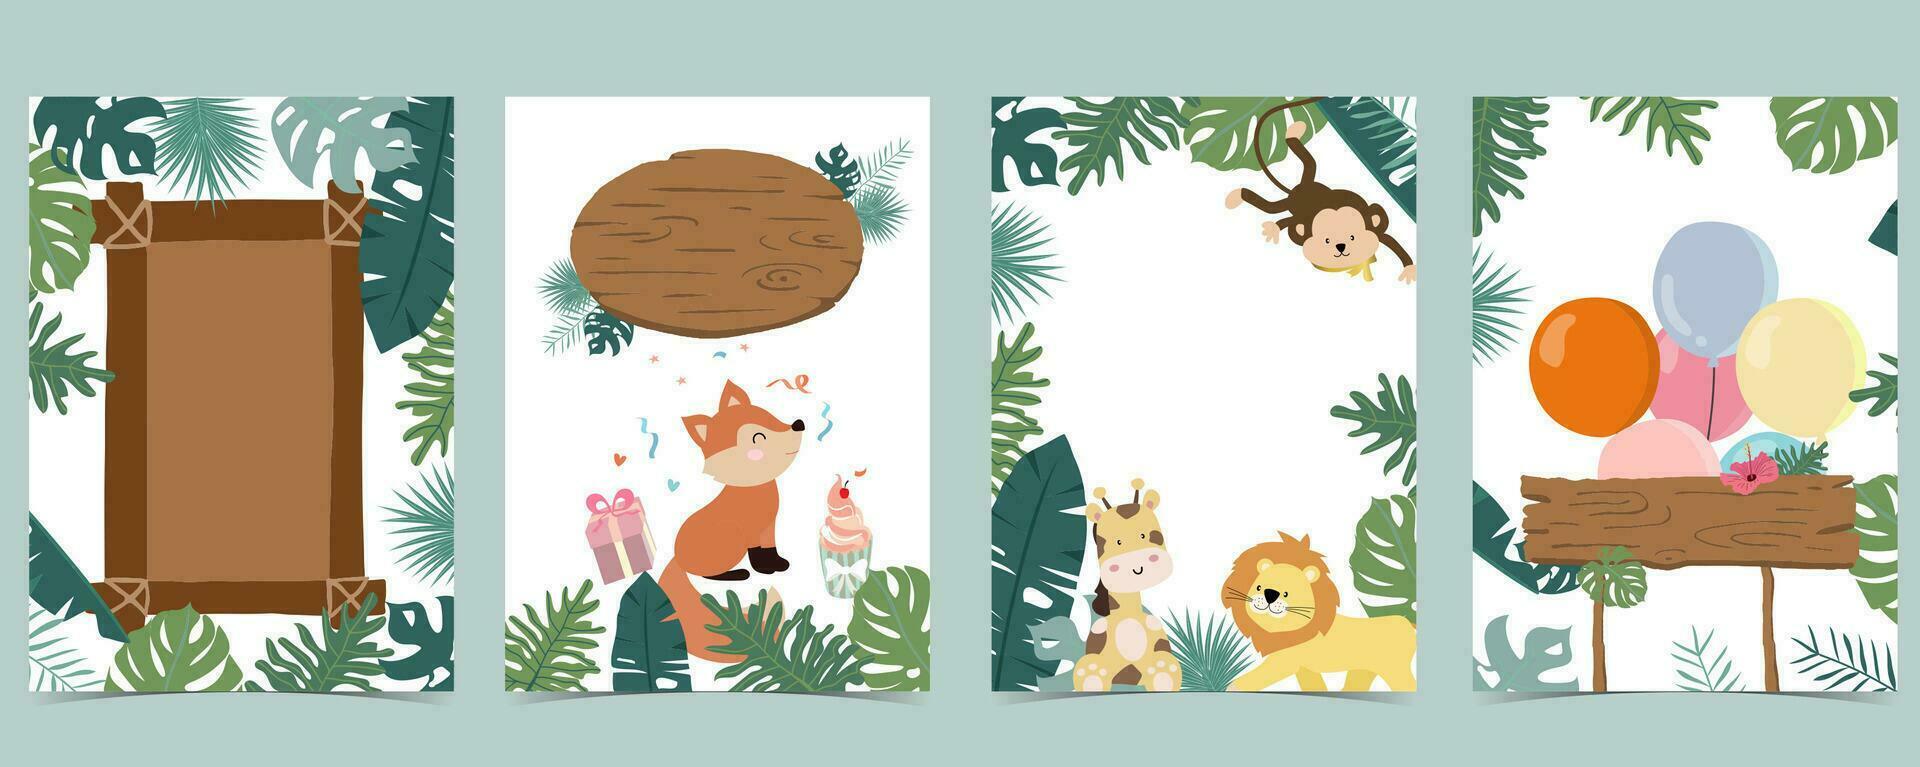 bois Cadre collection de safari Contexte set.editable vecteur illustration pour anniversaire invitation, carte postale et autocollant